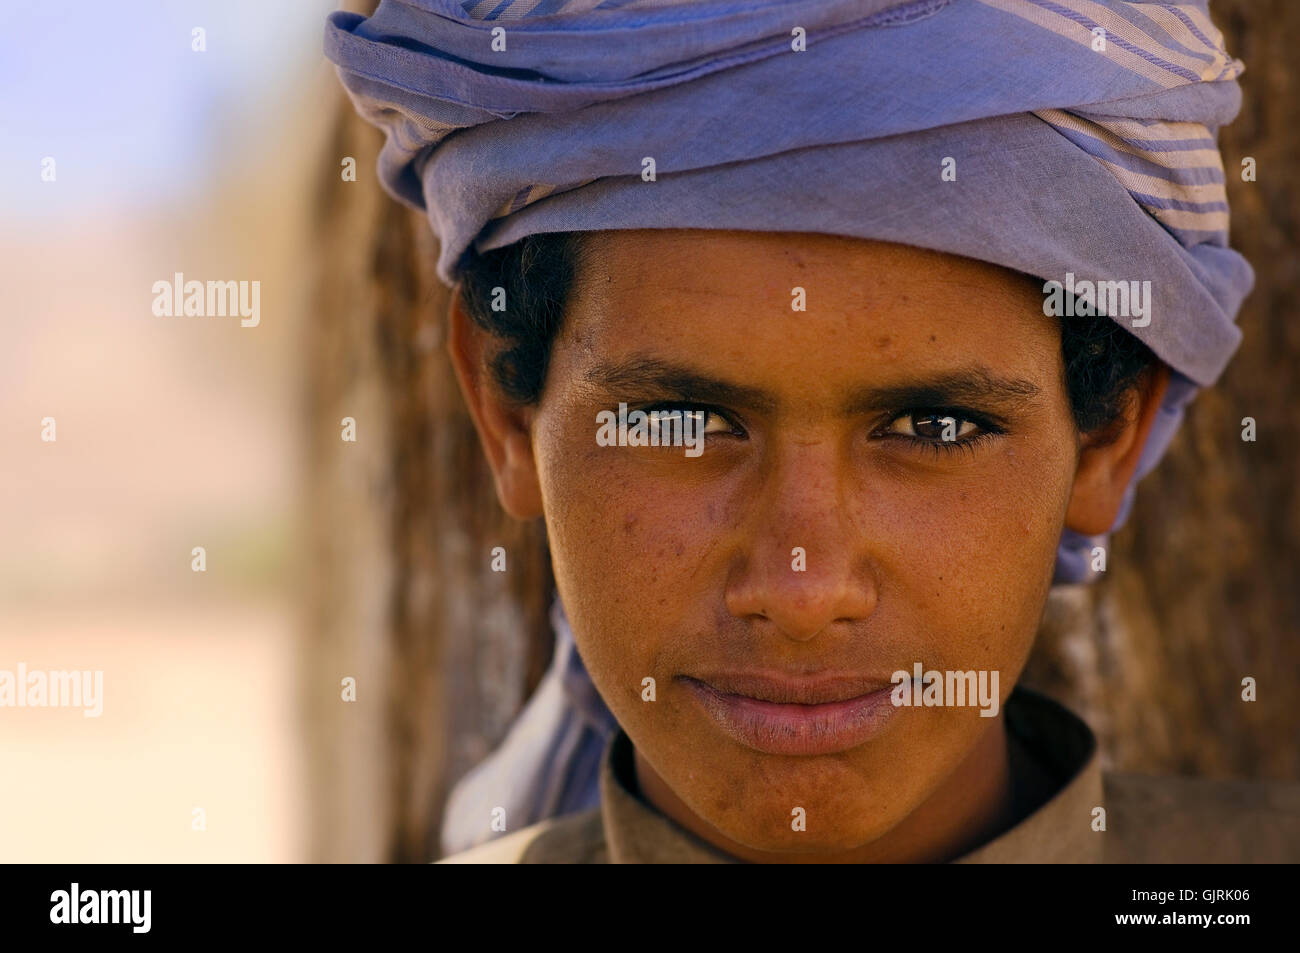 portrait bedouin man portrait Stock Photo